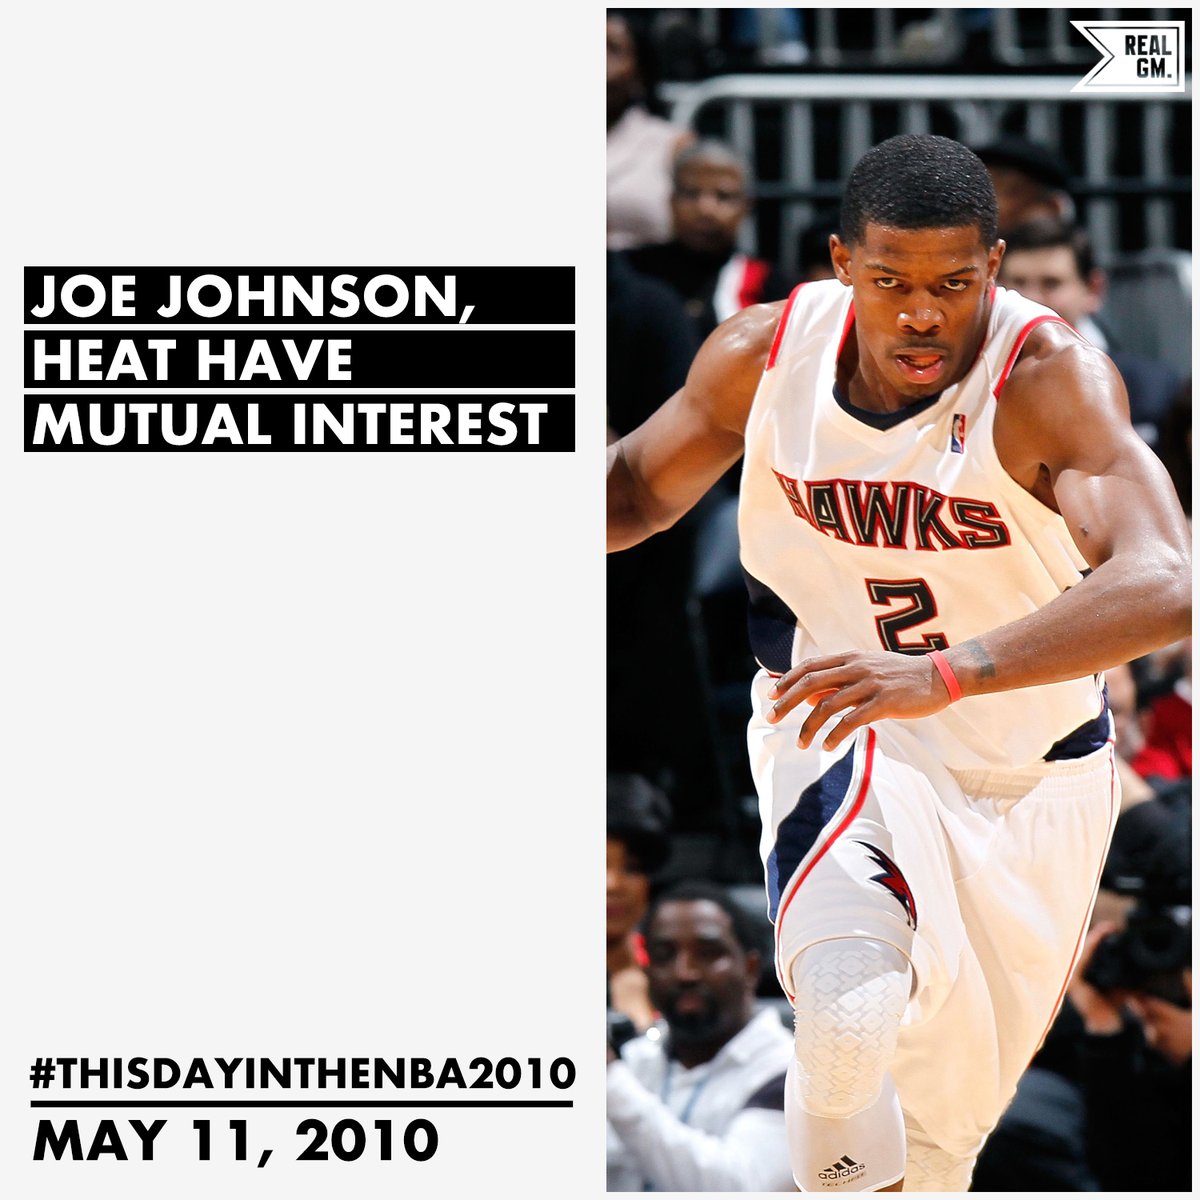  #ThisDayInTheNBA2010May 11, 2010Joe Johnson, Heat Have Mutual Interest https://basketball.realgm.com/wiretap/203838/Joe-Johnson-Heat-Have-Mutual-Interest